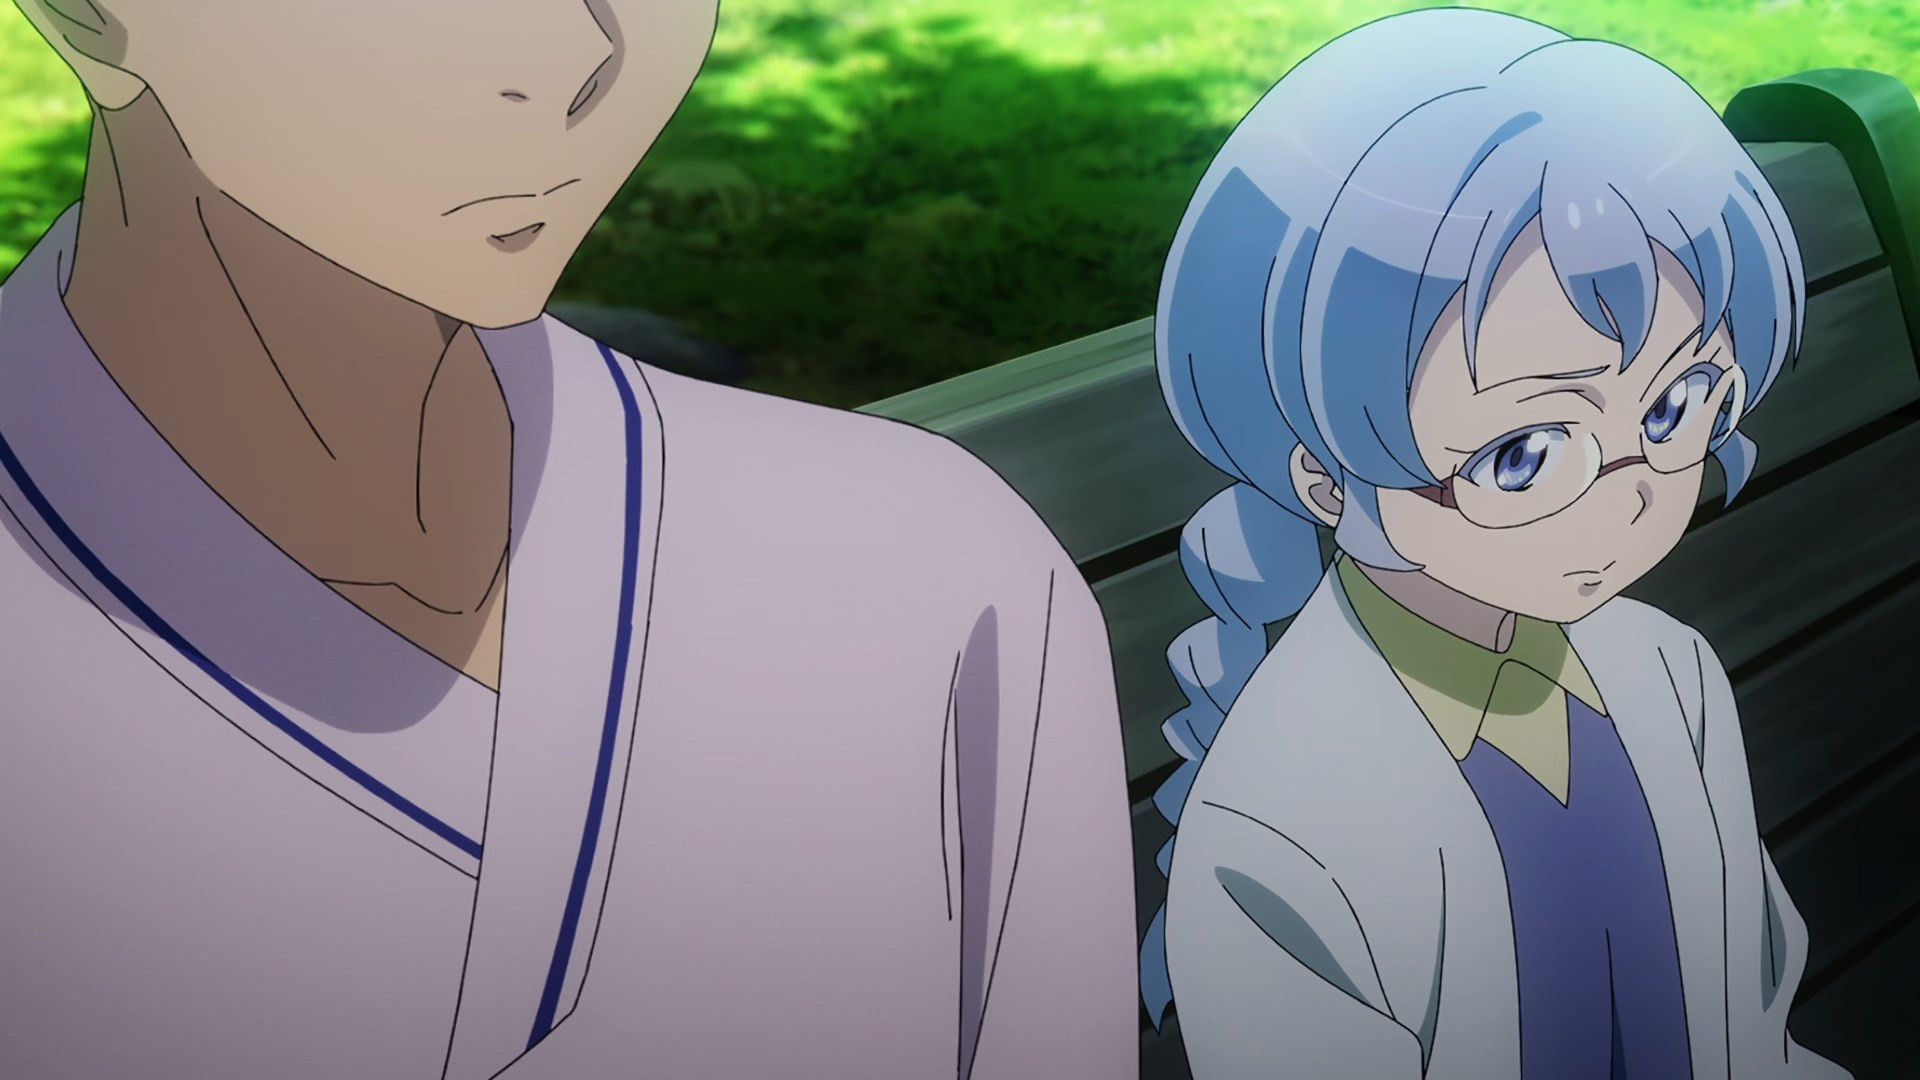 Kiseijuu: Sei no Kakuritsu Episódio 17 - Animes Online